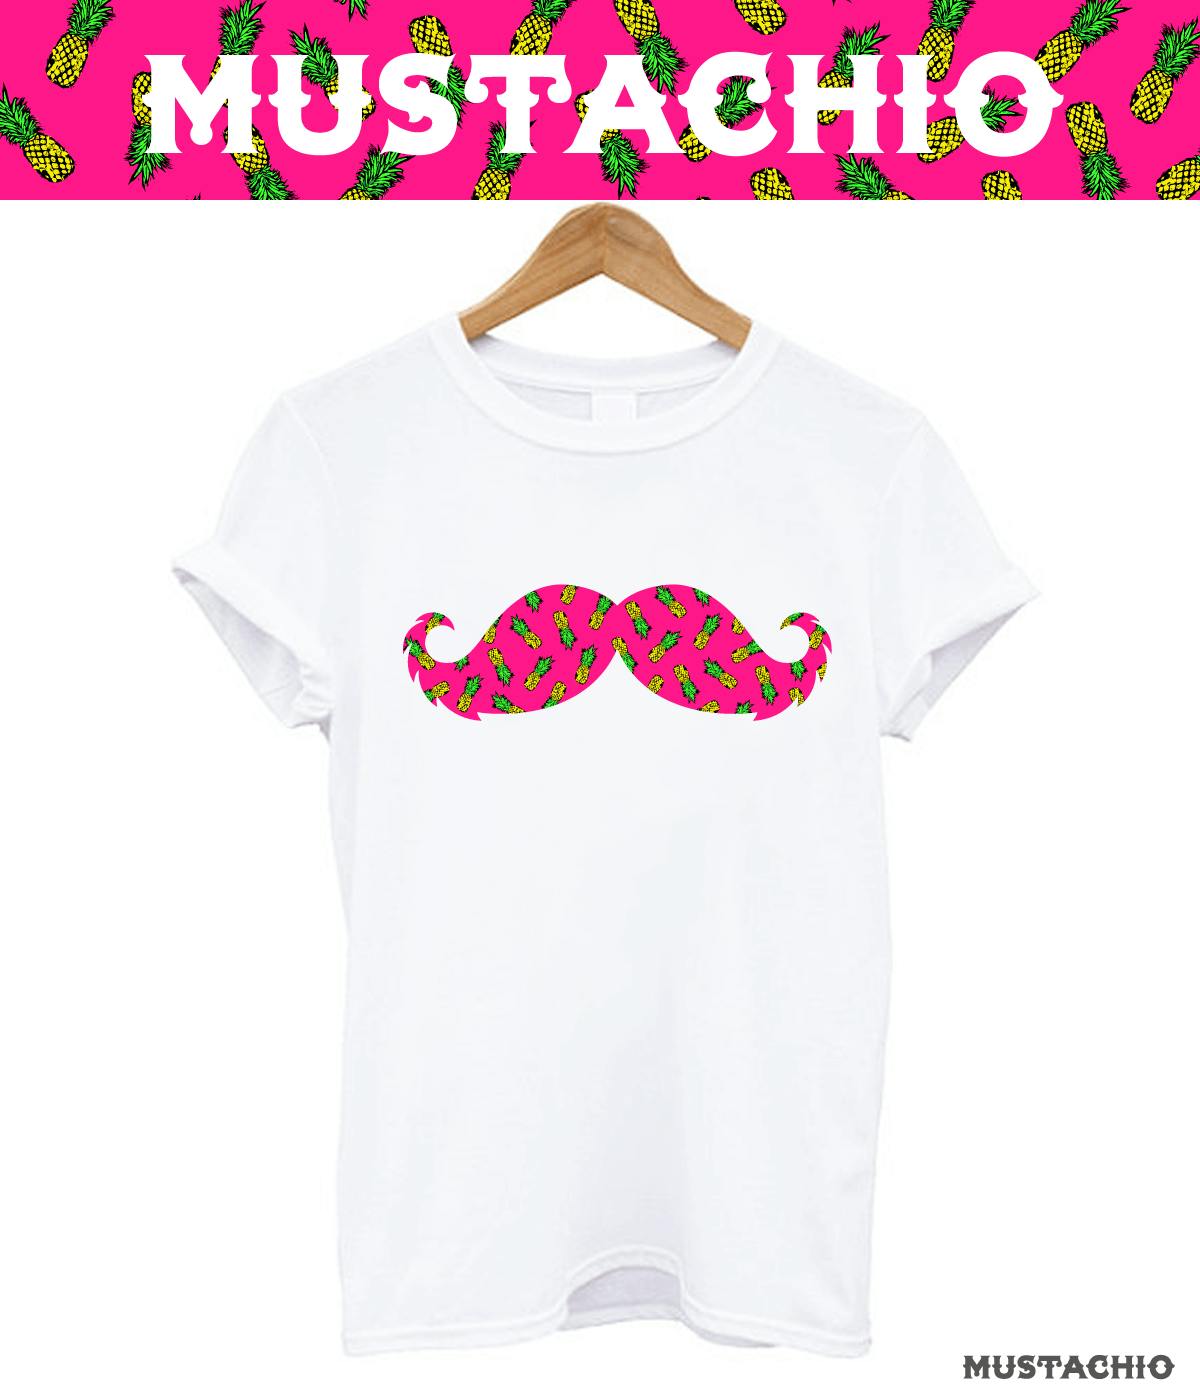 moustache t-shirts